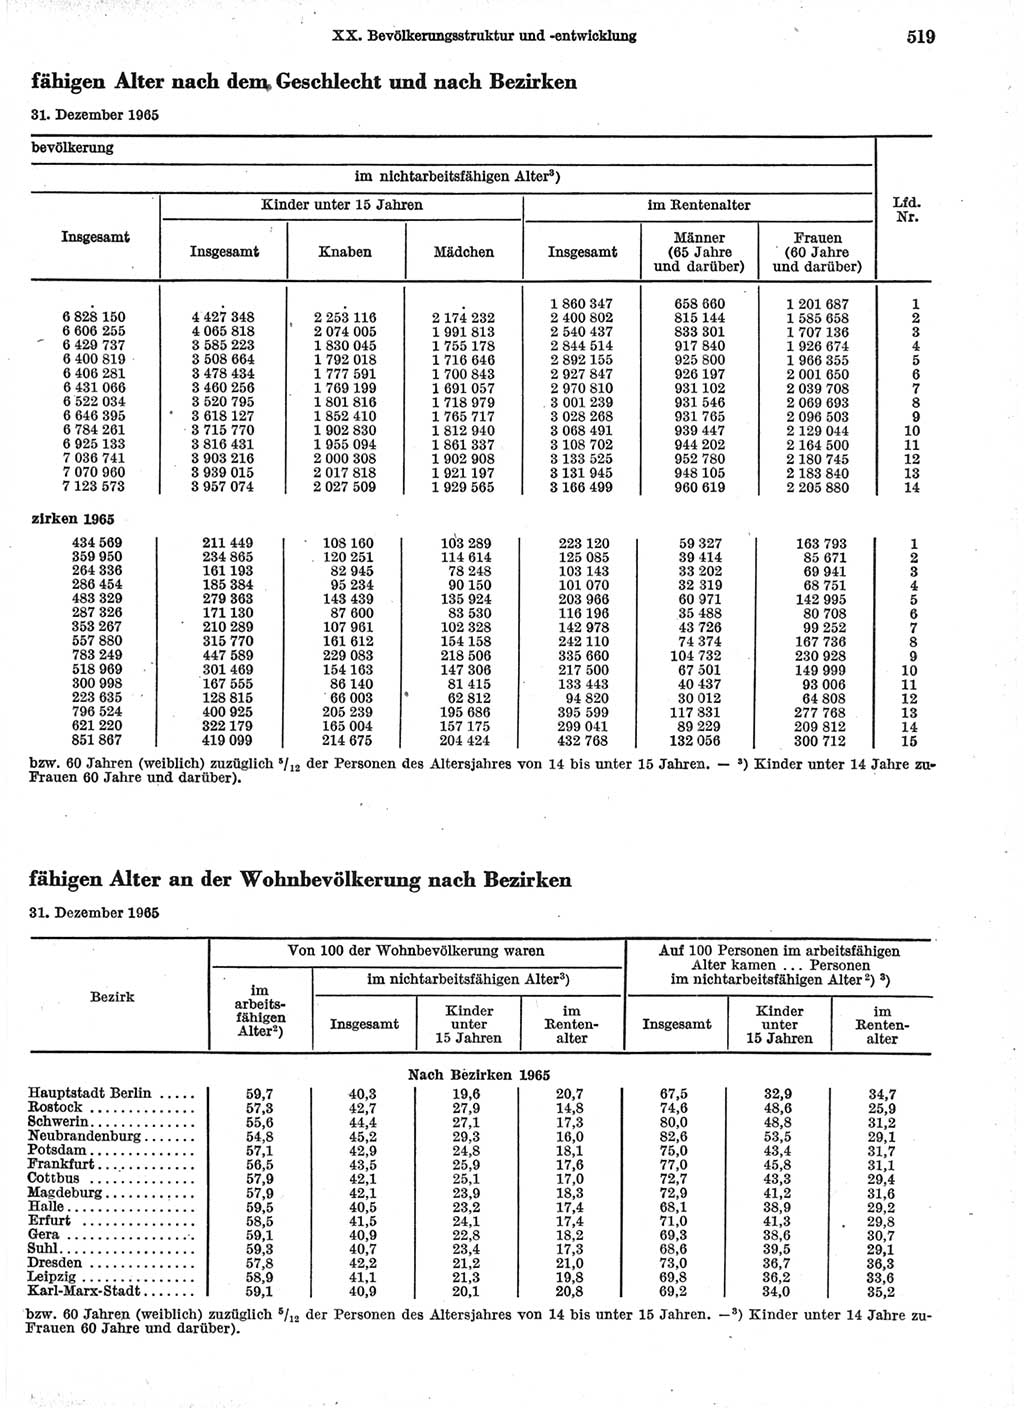 Statistisches Jahrbuch der Deutschen Demokratischen Republik (DDR) 1966, Seite 519 (Stat. Jb. DDR 1966, S. 519)